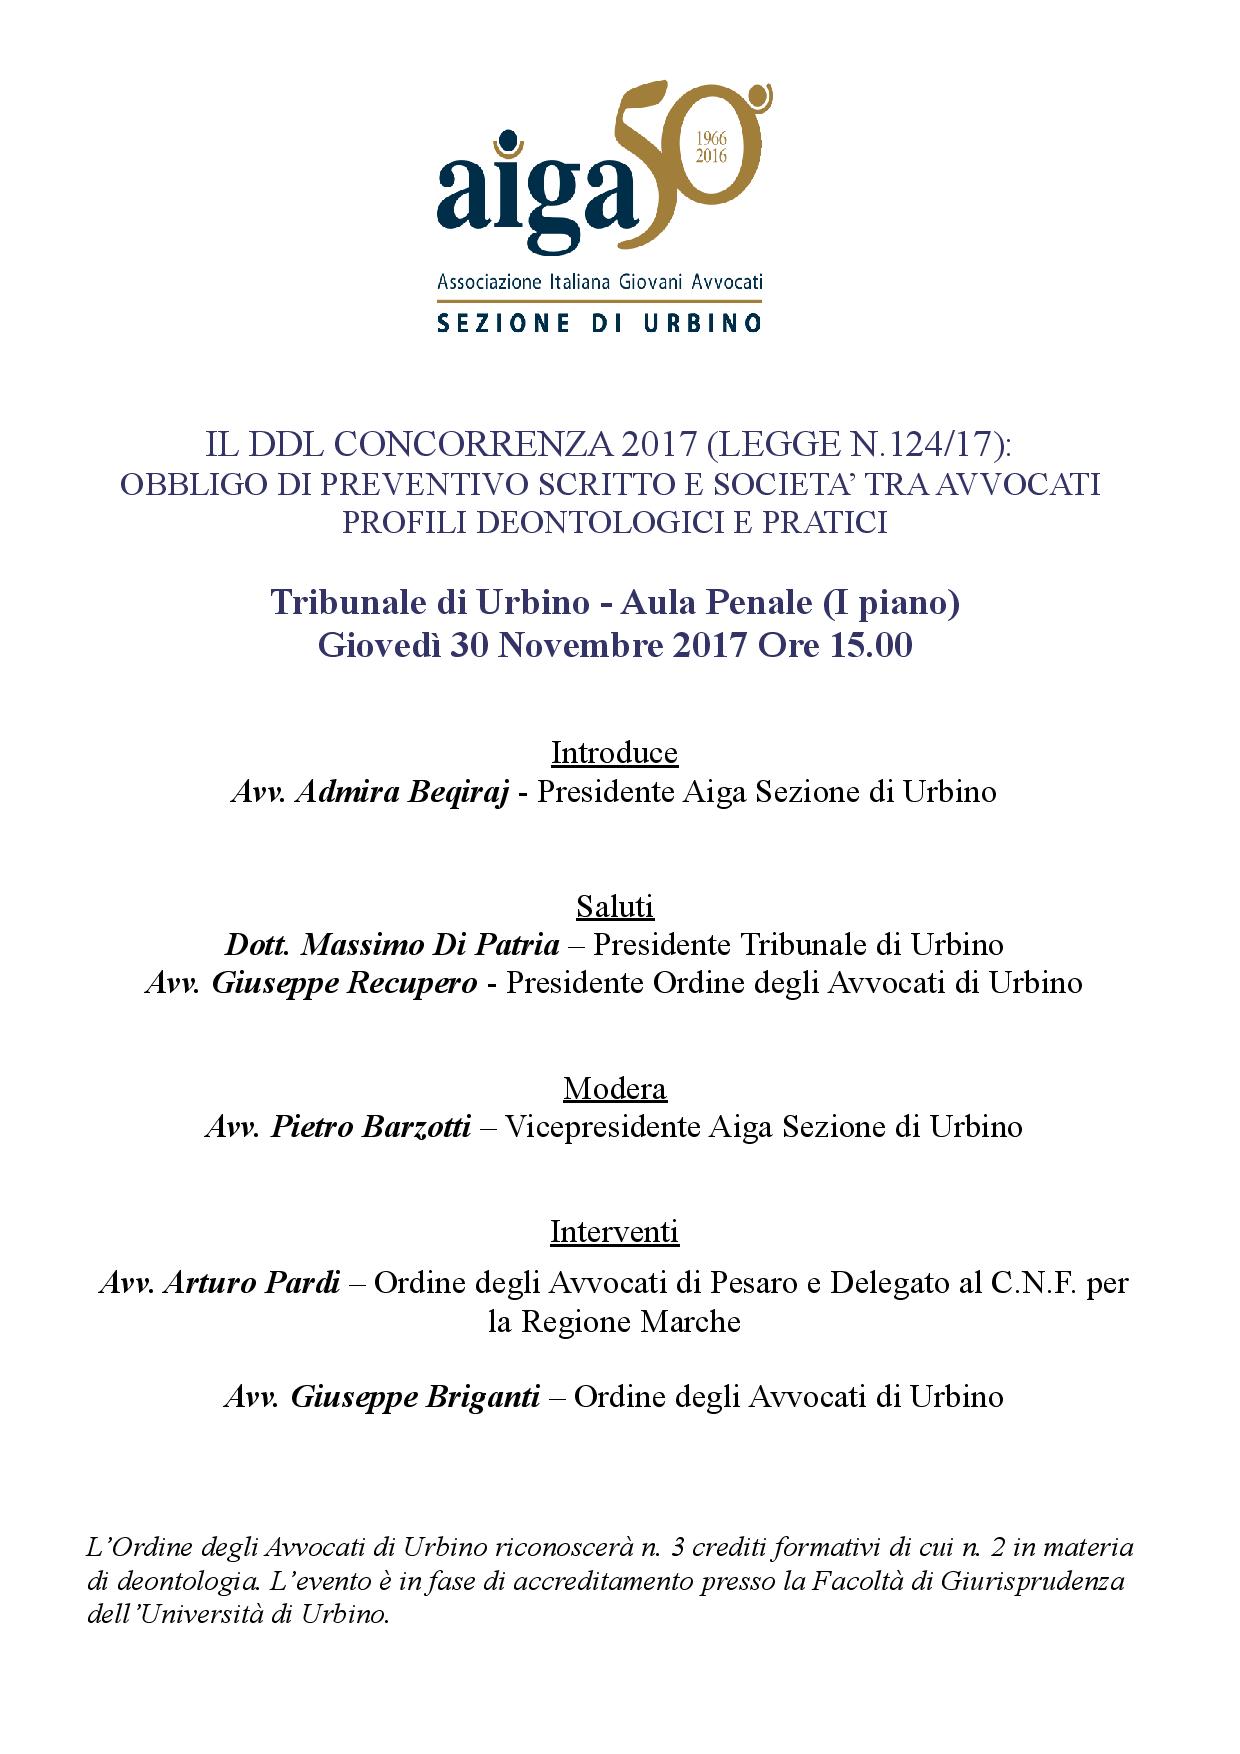 Avvocati, obbligo di preventivo e società tra professionisti: si discute dei profili deontologici e pratici il 30/11 in Urbino